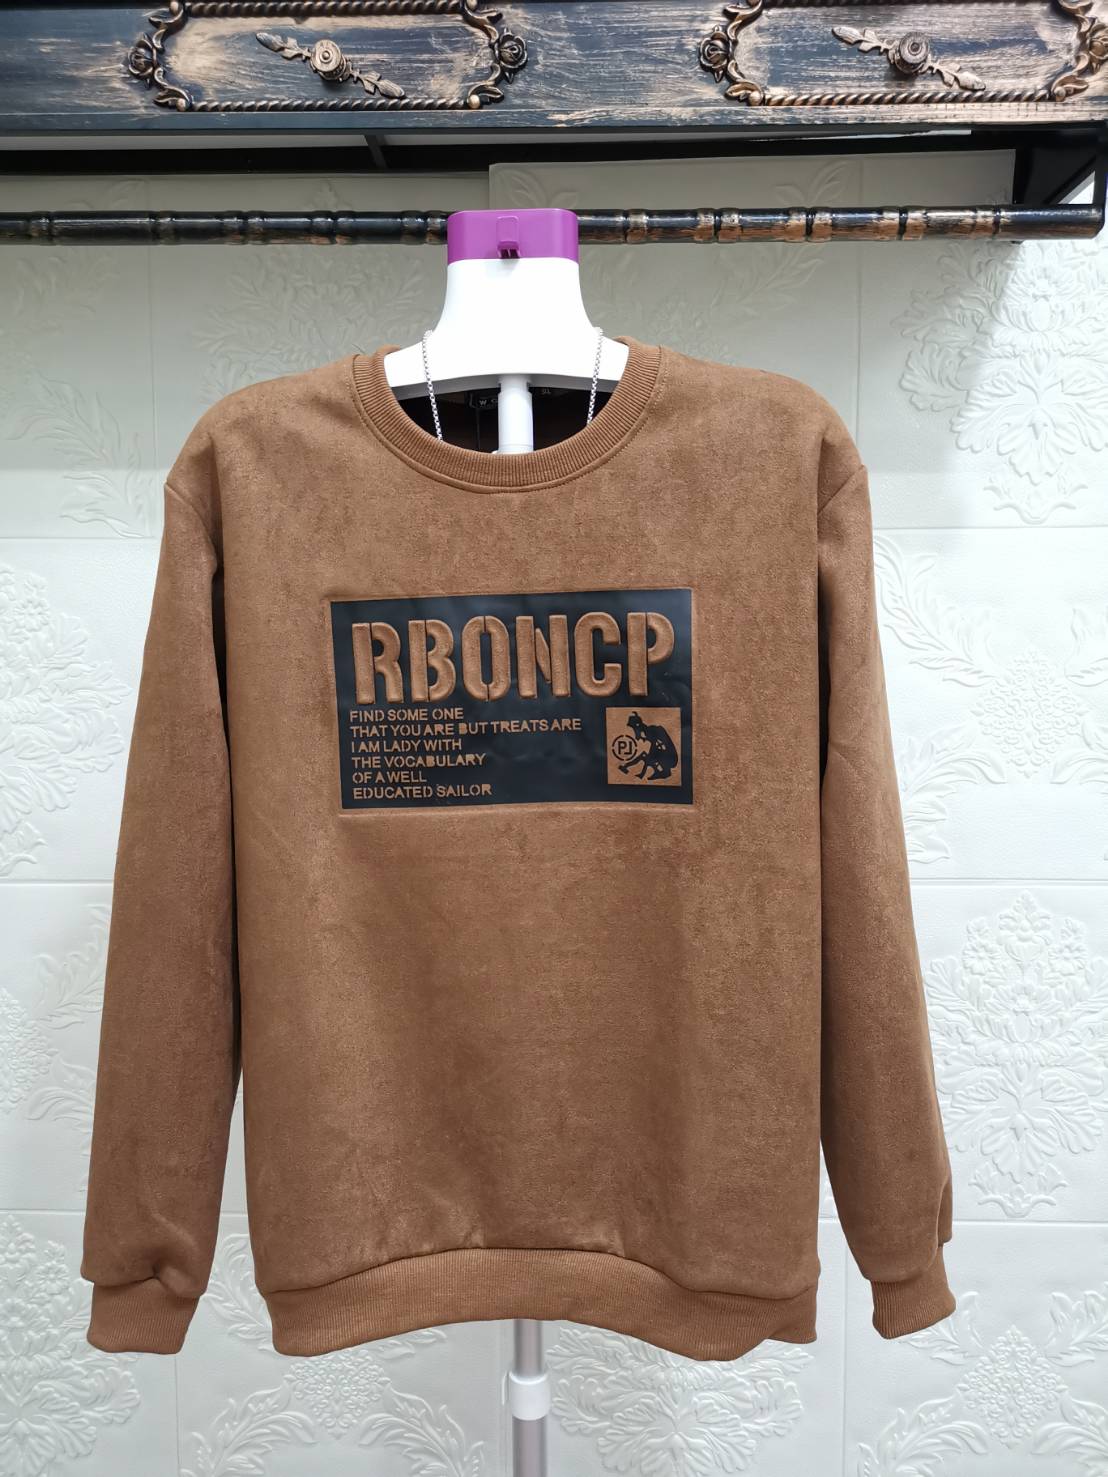 เสื้อกันหนาวแฟชั่น RBONCP ผ้าสักหลาดชนิดหนานุ่ม งานปักเนี๊ยบแน่น ซักไม่หลุด จ่ายเงินปลายทางได้